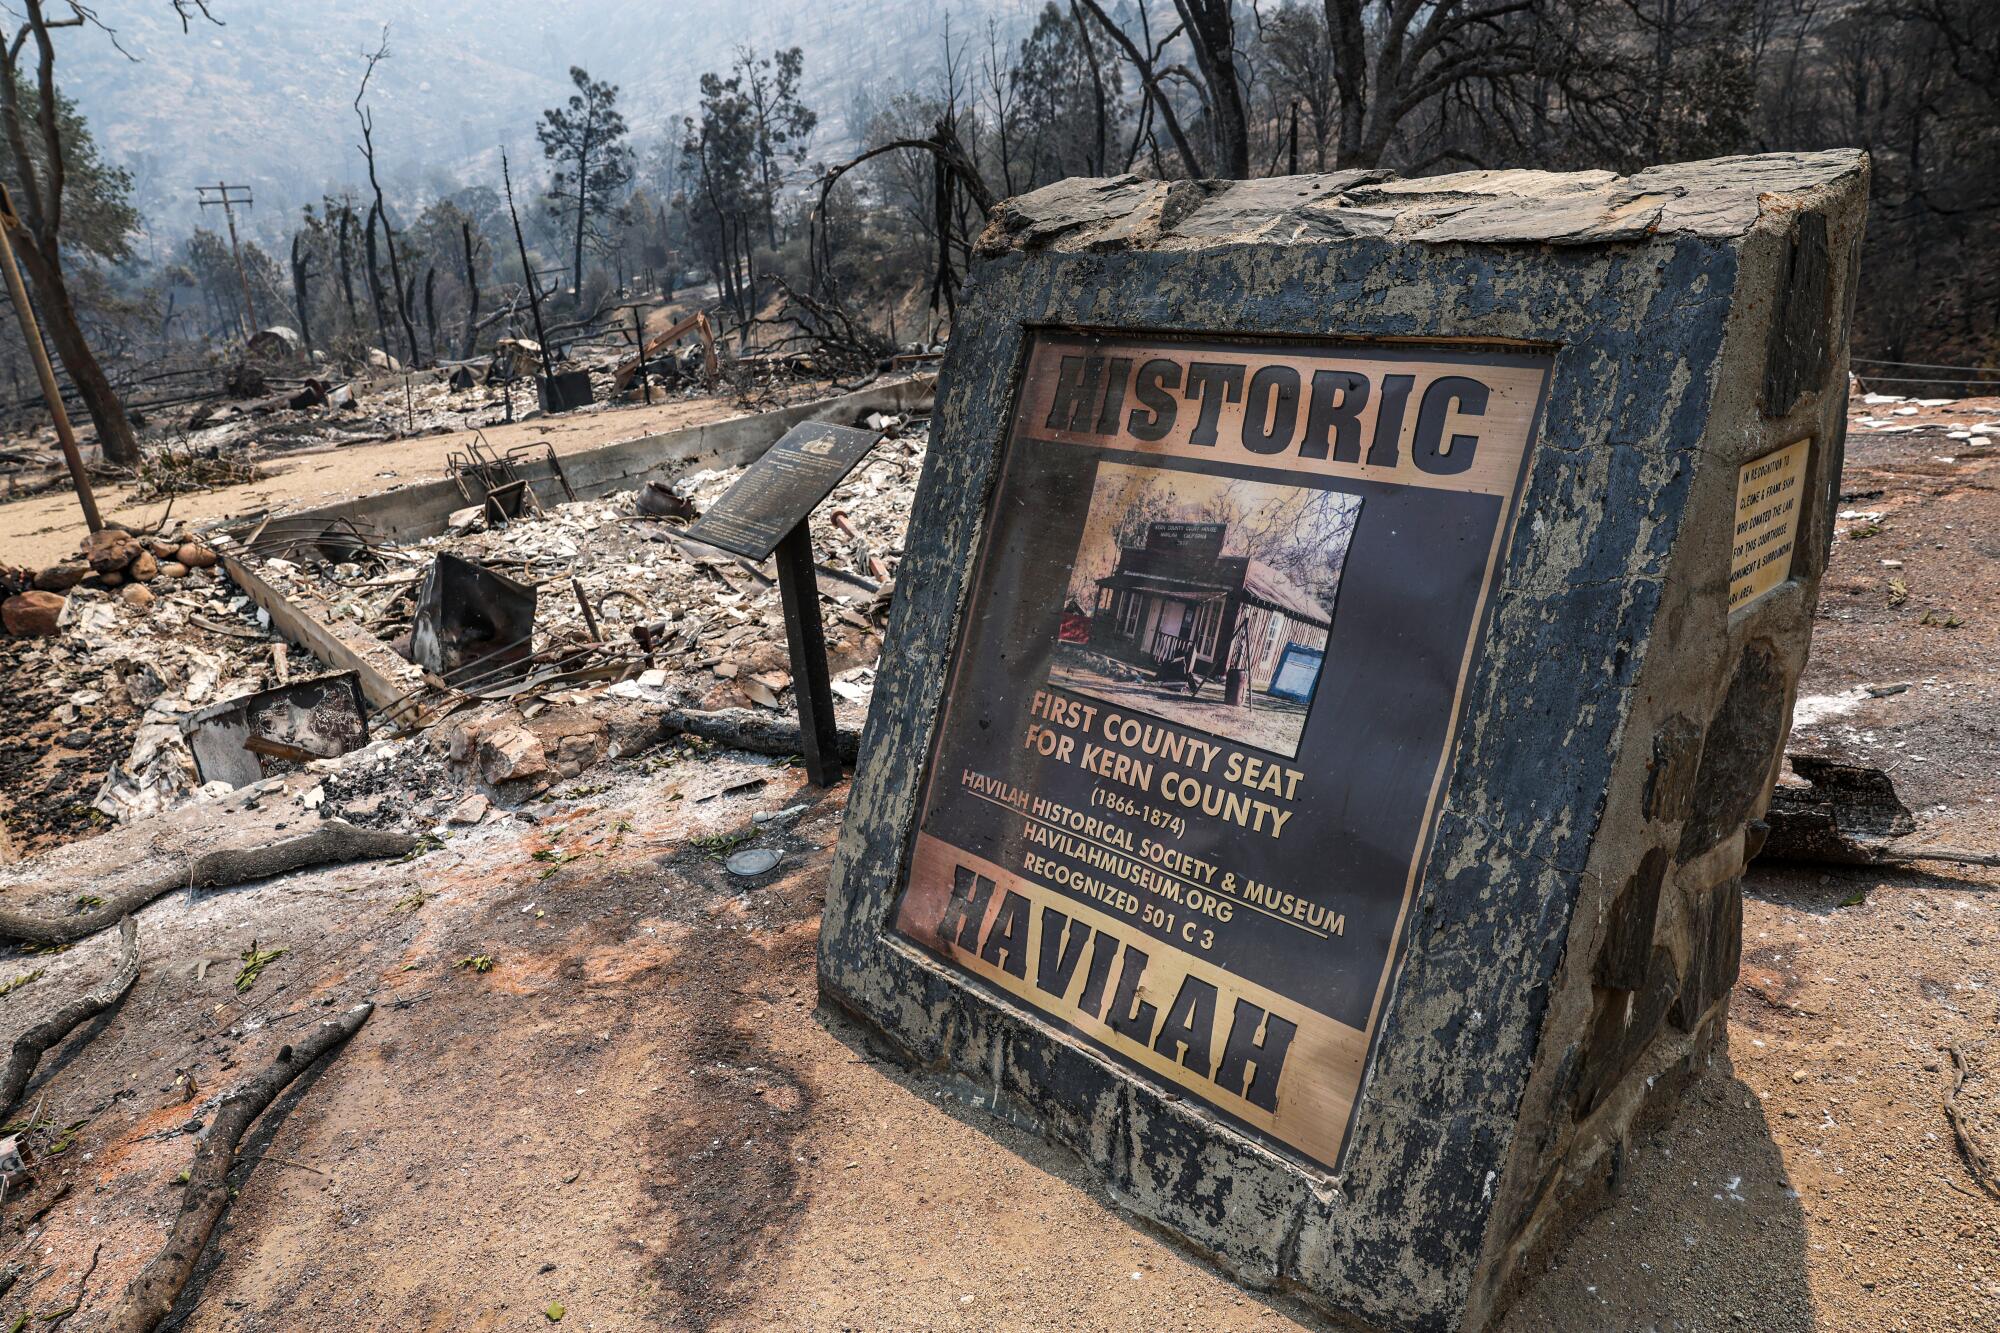 The Borel fire devastated the town of Havilah, leaving many residents homeless.